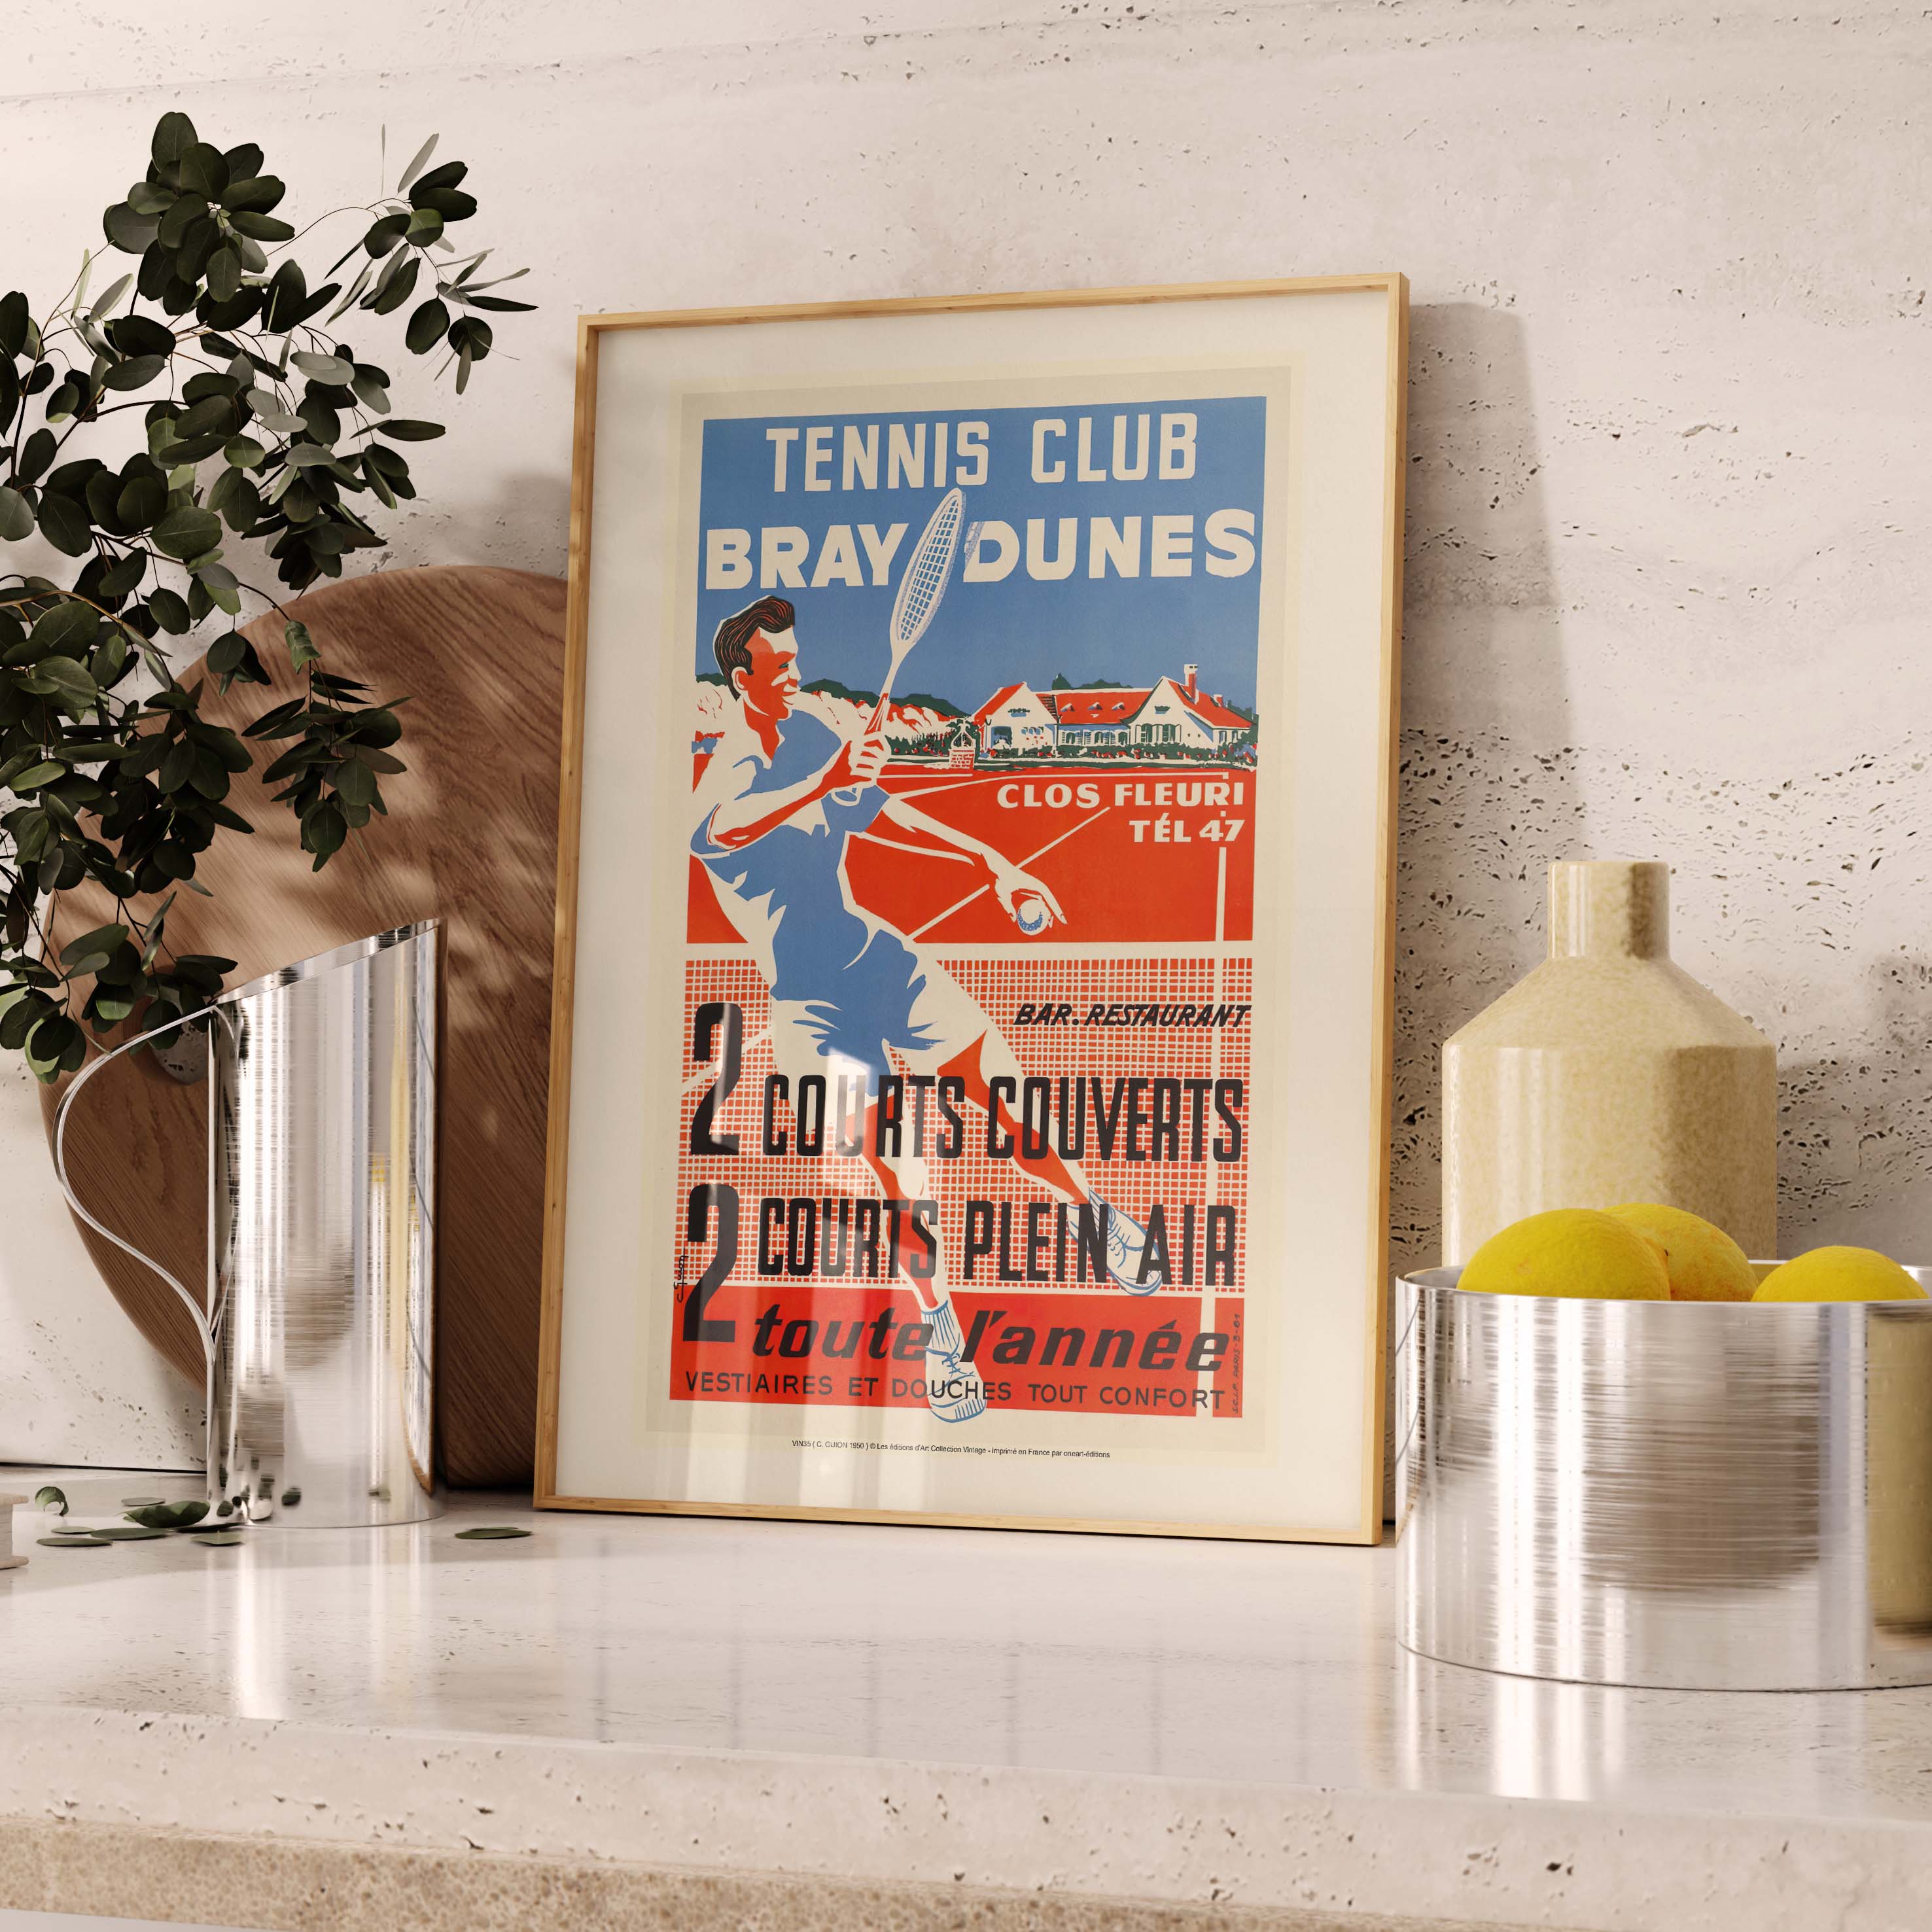 Affiche publicité vintage - Tennis CluB-oneart.fr